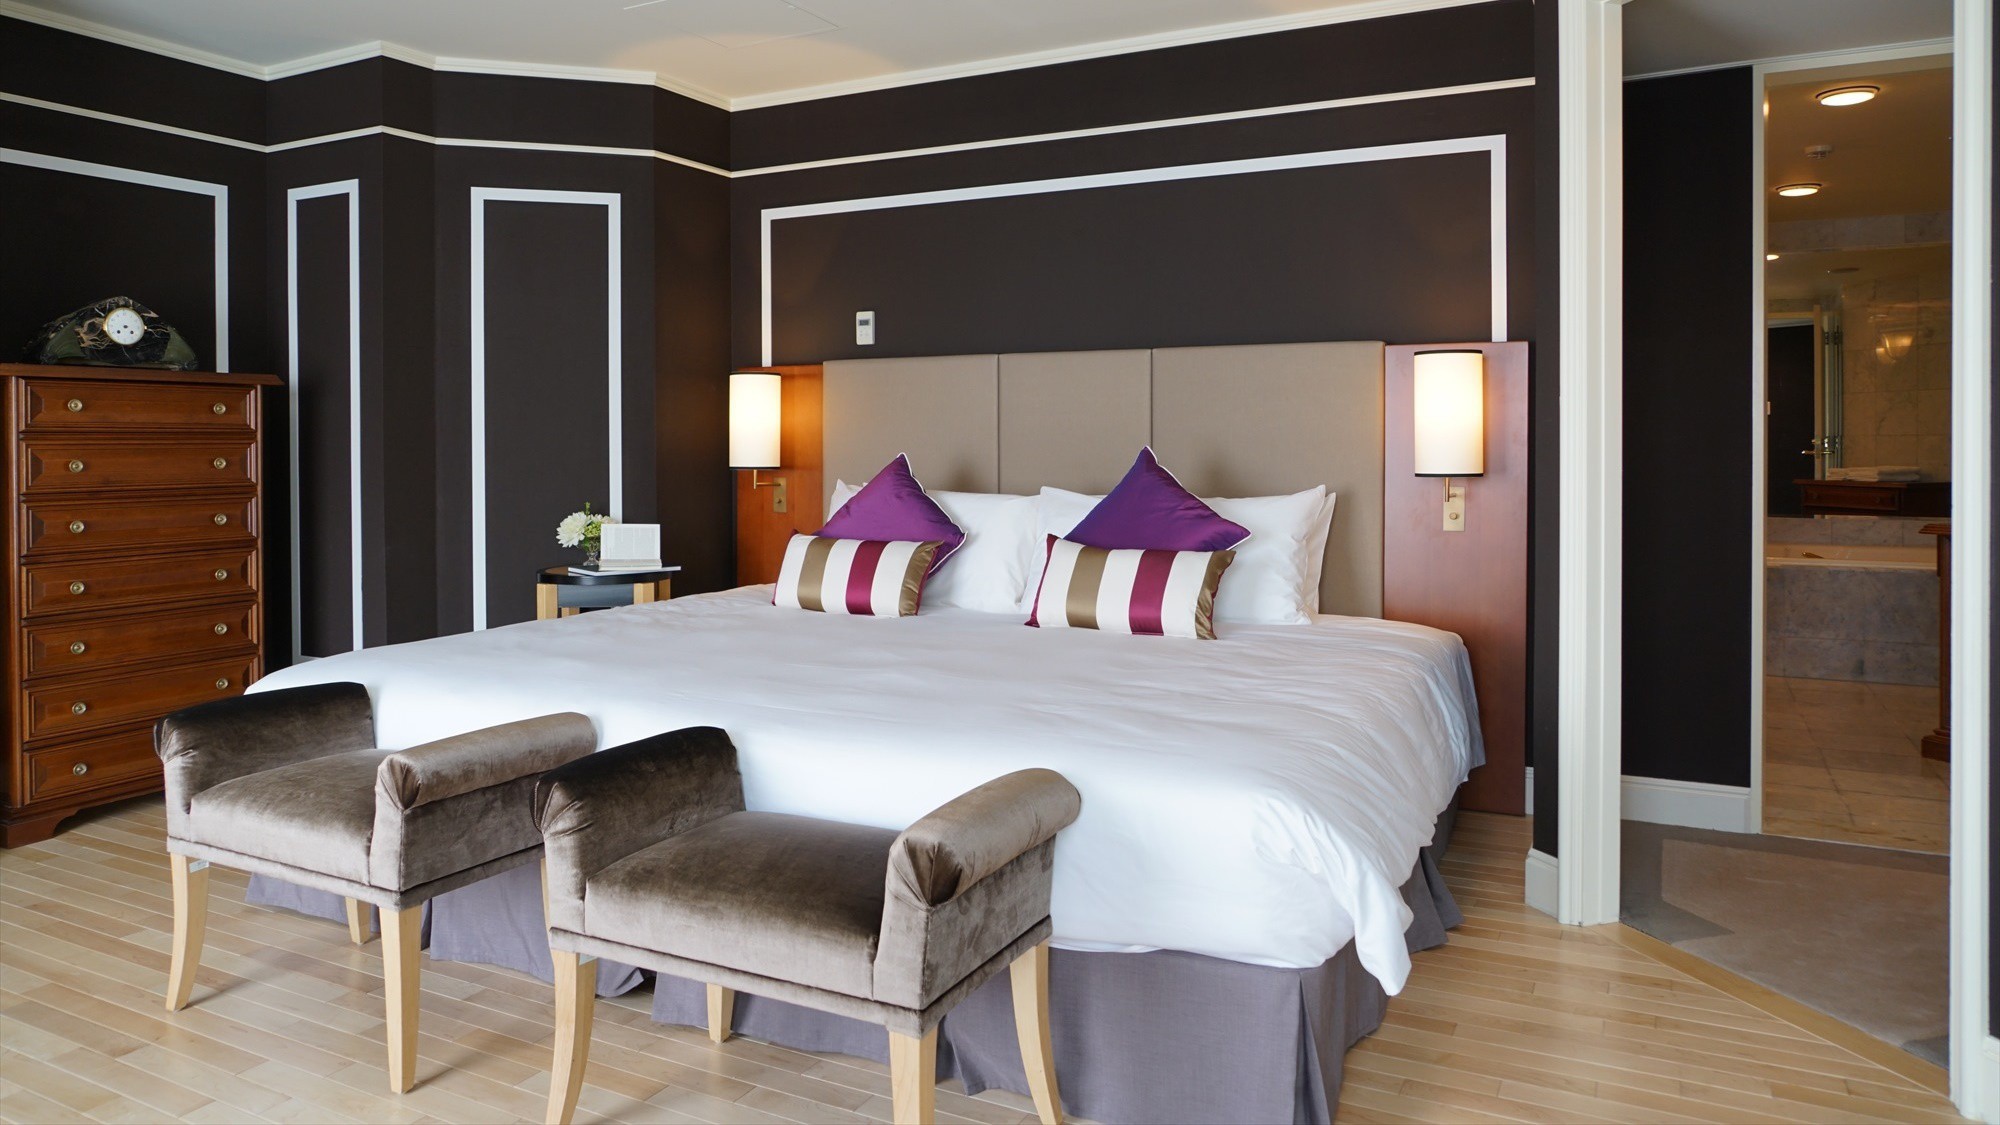 ◆Royal Suite｜スイートルームの客室はよりエレガントに上質な大人の空間へと導きます。